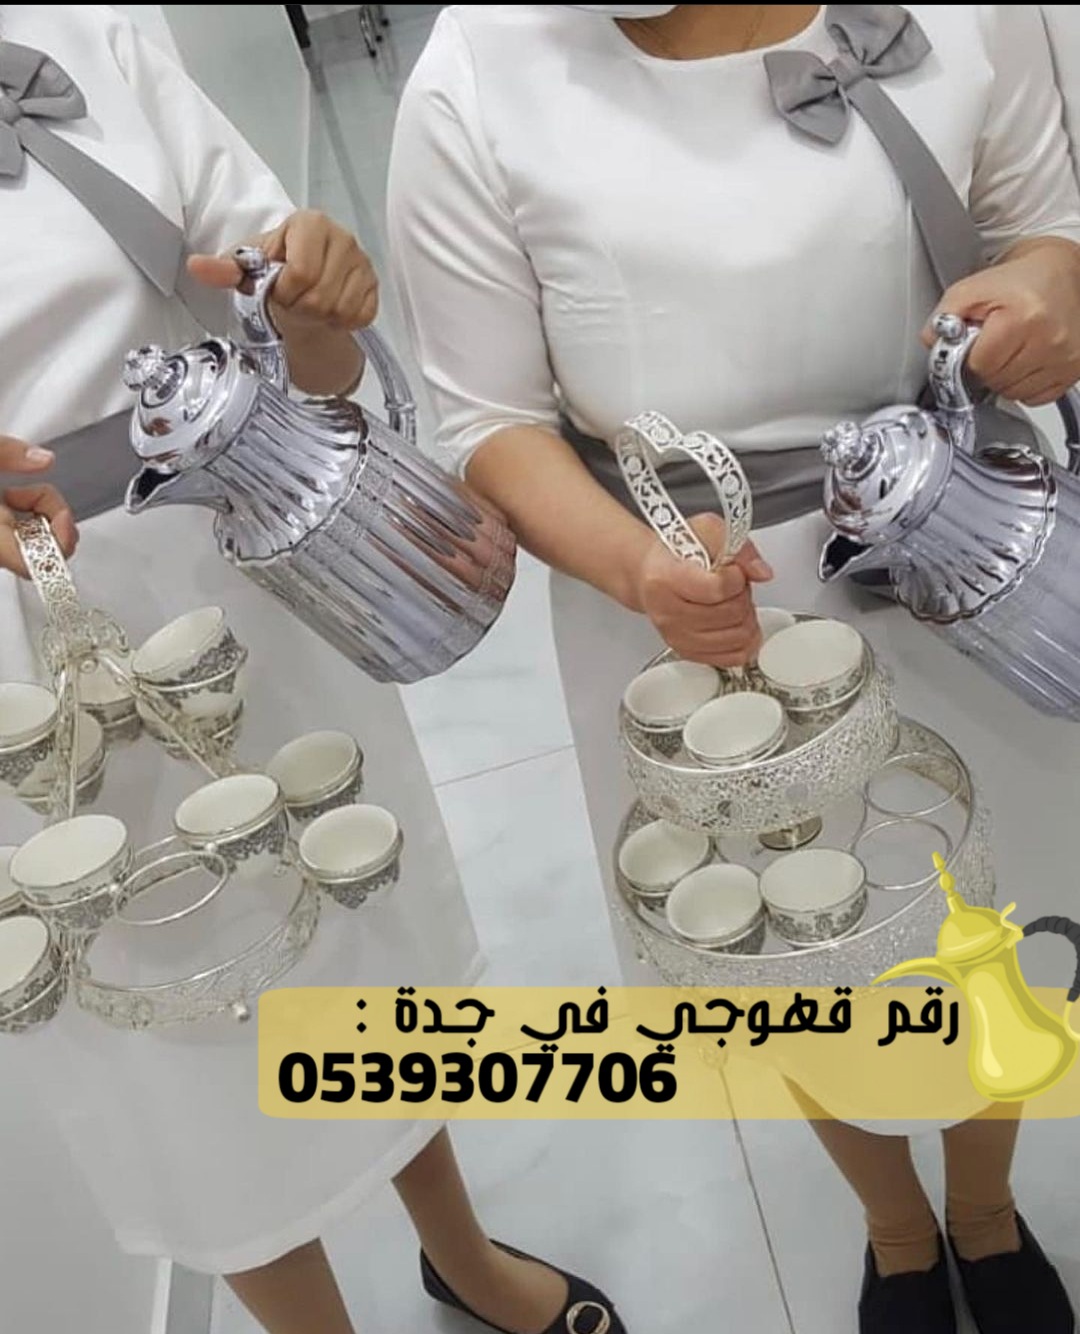 قهوجيين و صبابين ضيافة في جدة, 0539307706